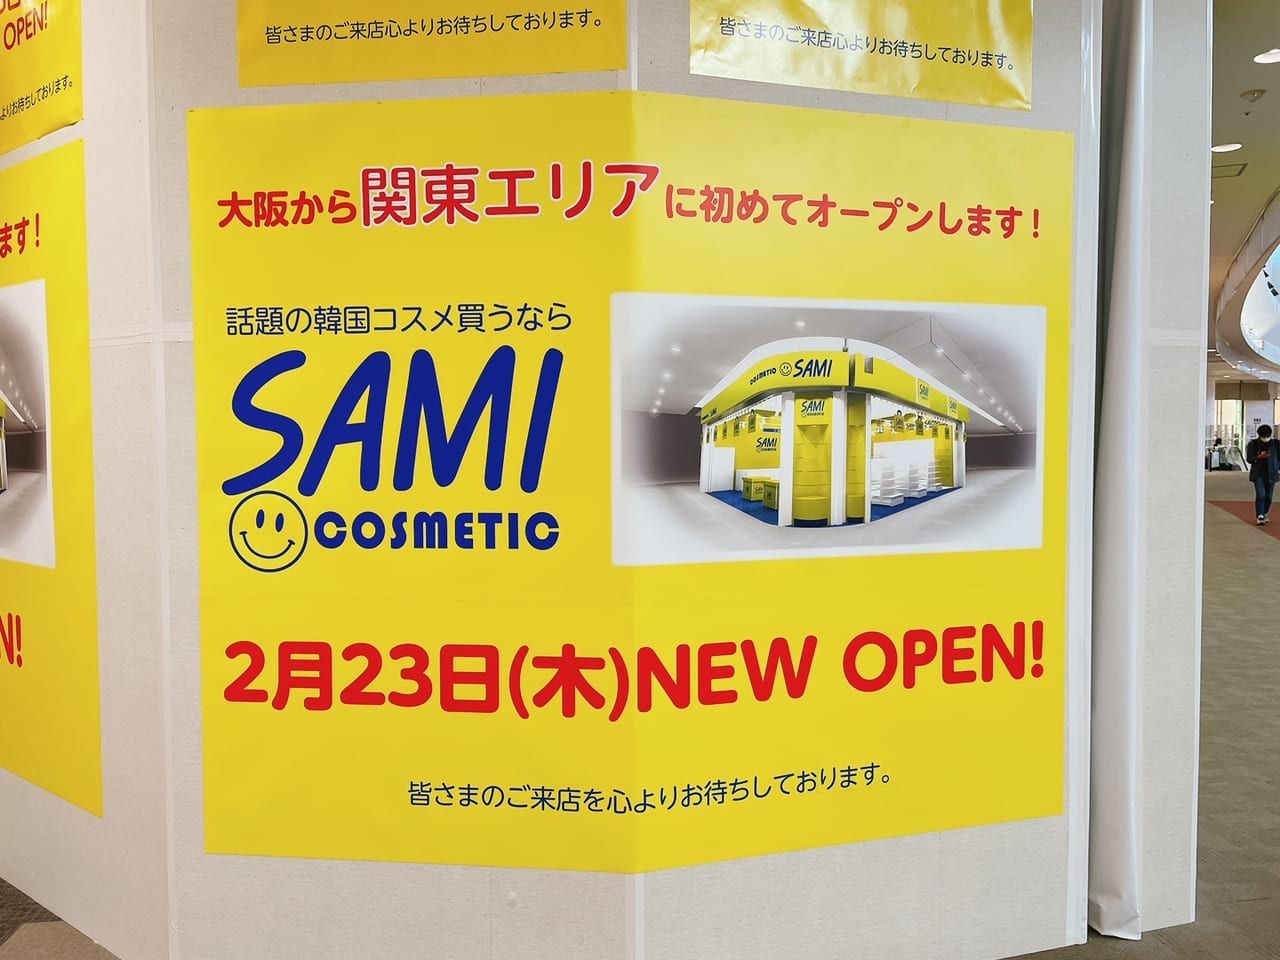 イオンレイクタウンにSAMIが開店していました。